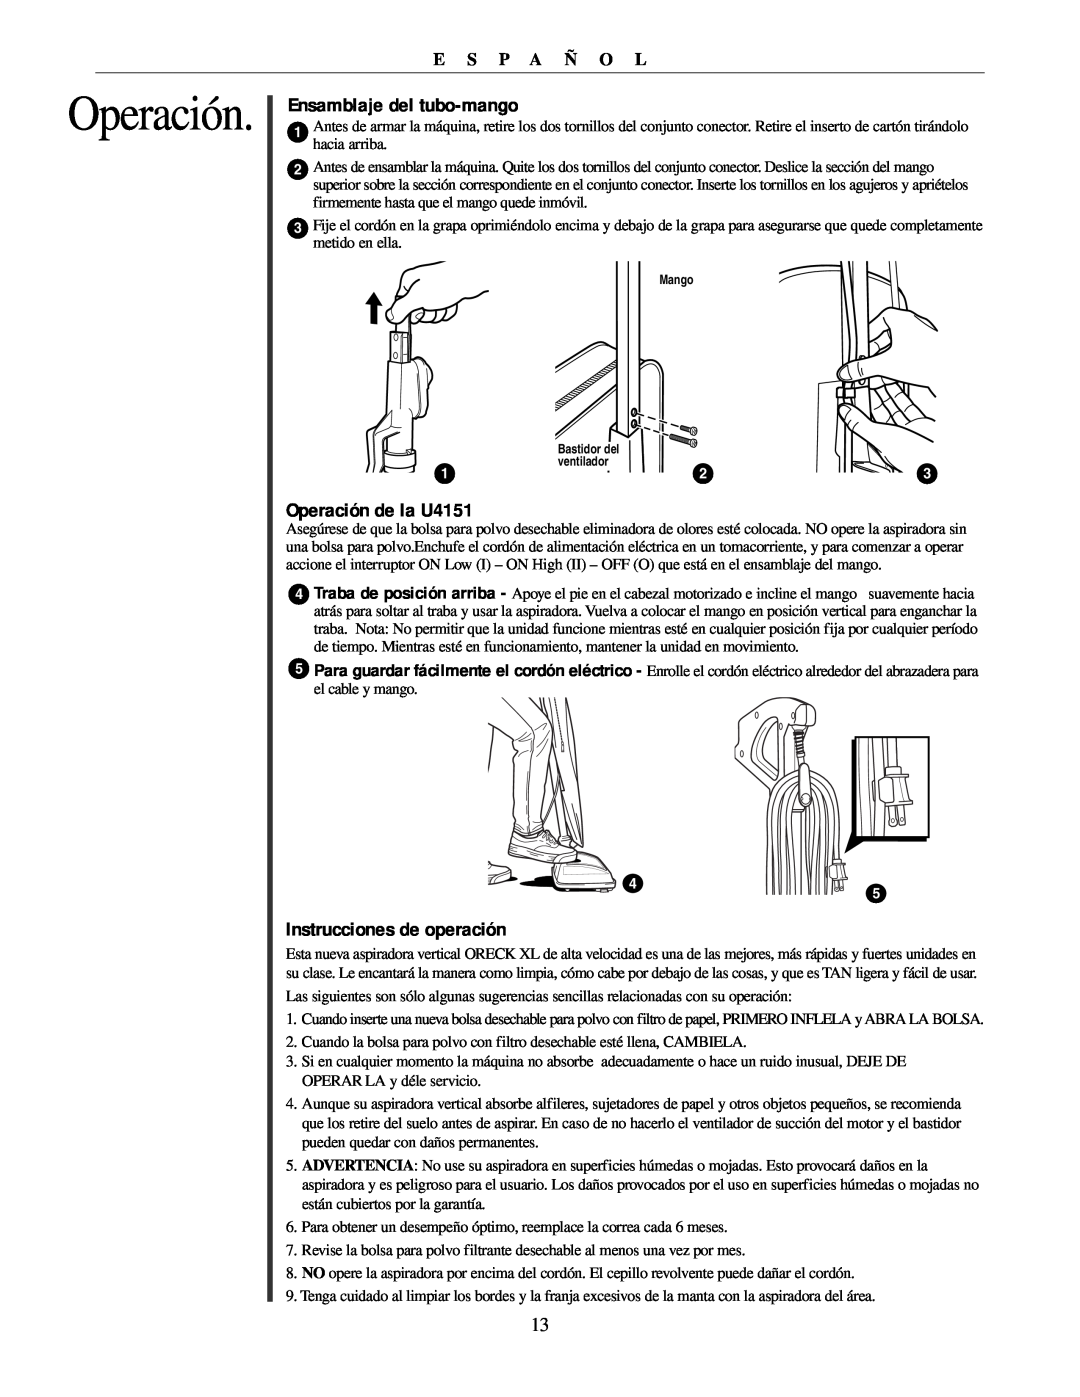 Oreck manual Ensamblaje del tubo-mango, Operación de la U4151, Instrucciones de operación, E S P A Ñ O L 